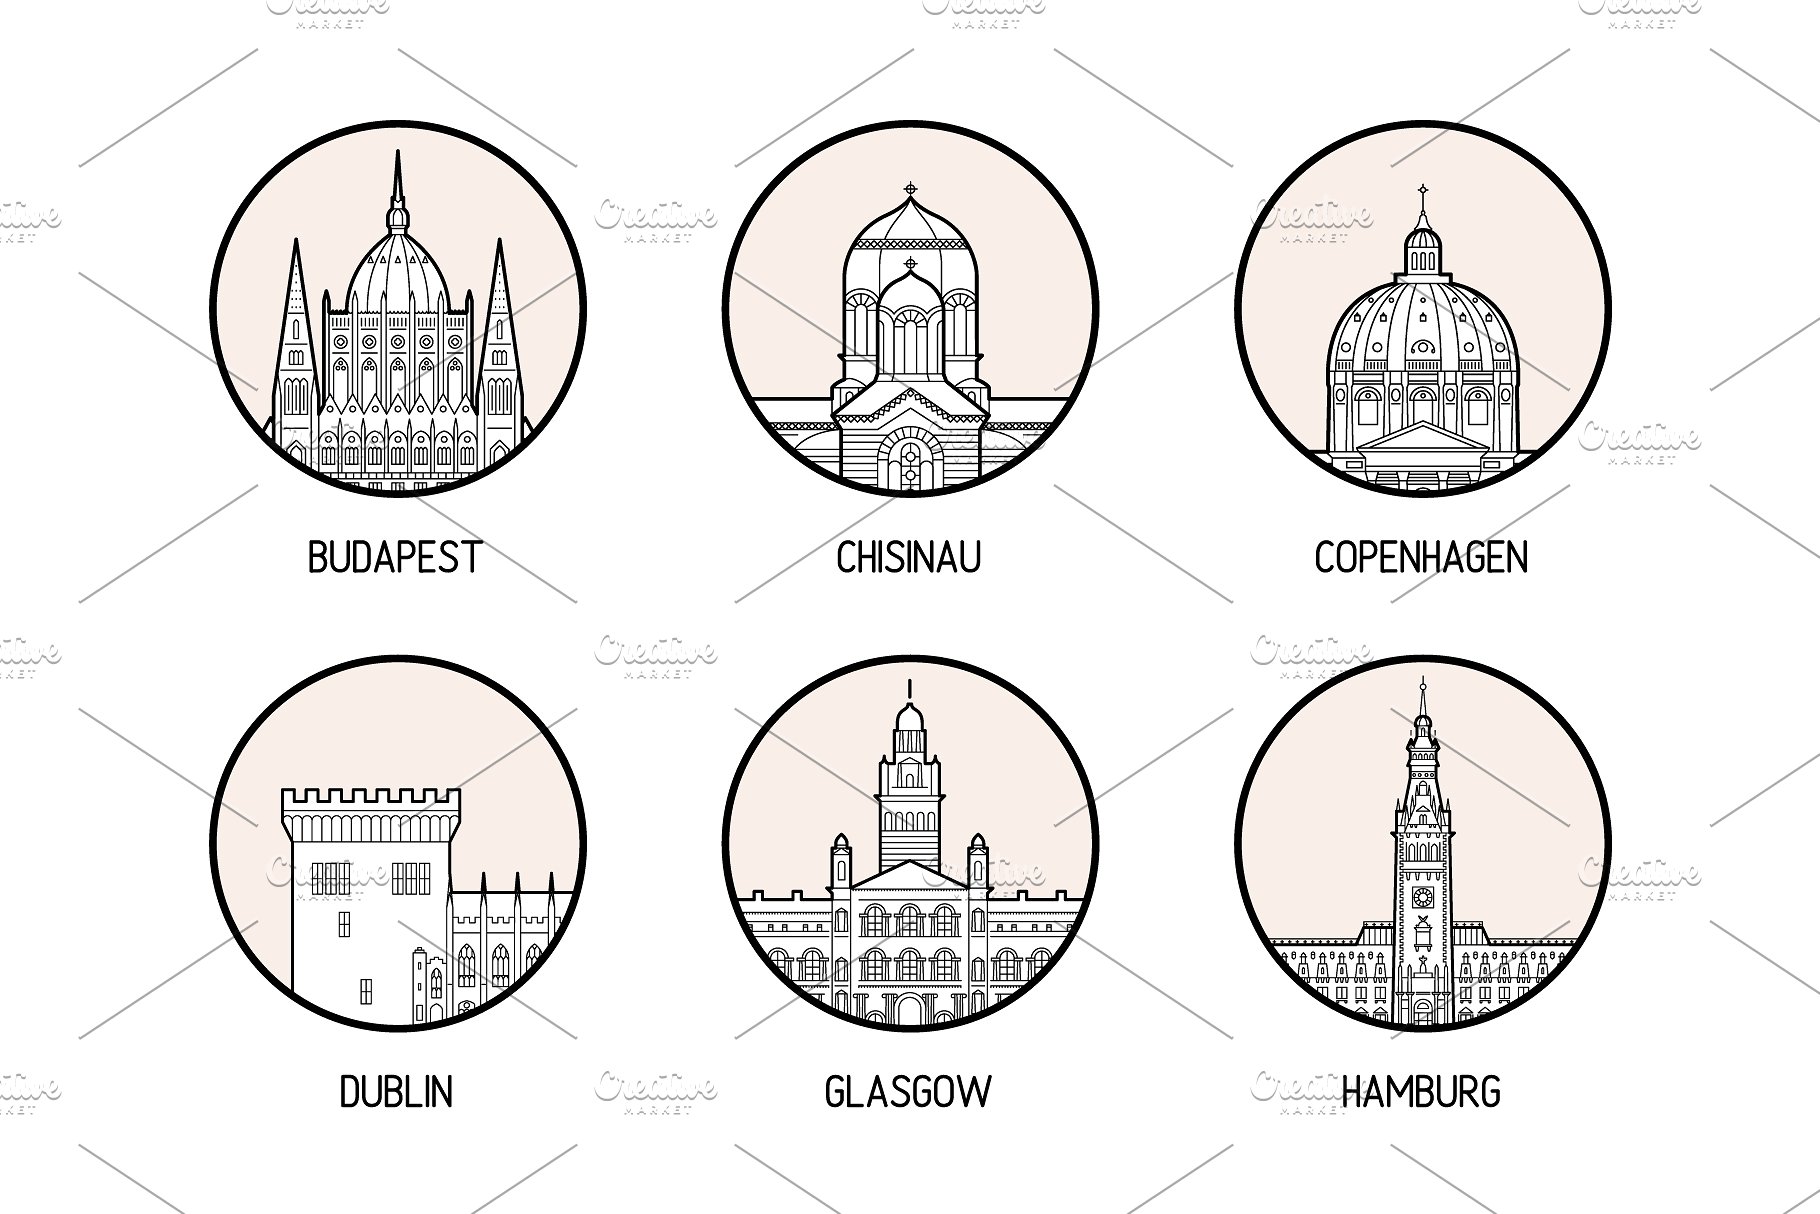 30个欧洲城市的徽章图标集合 Icons of 30 European cities插图(3)